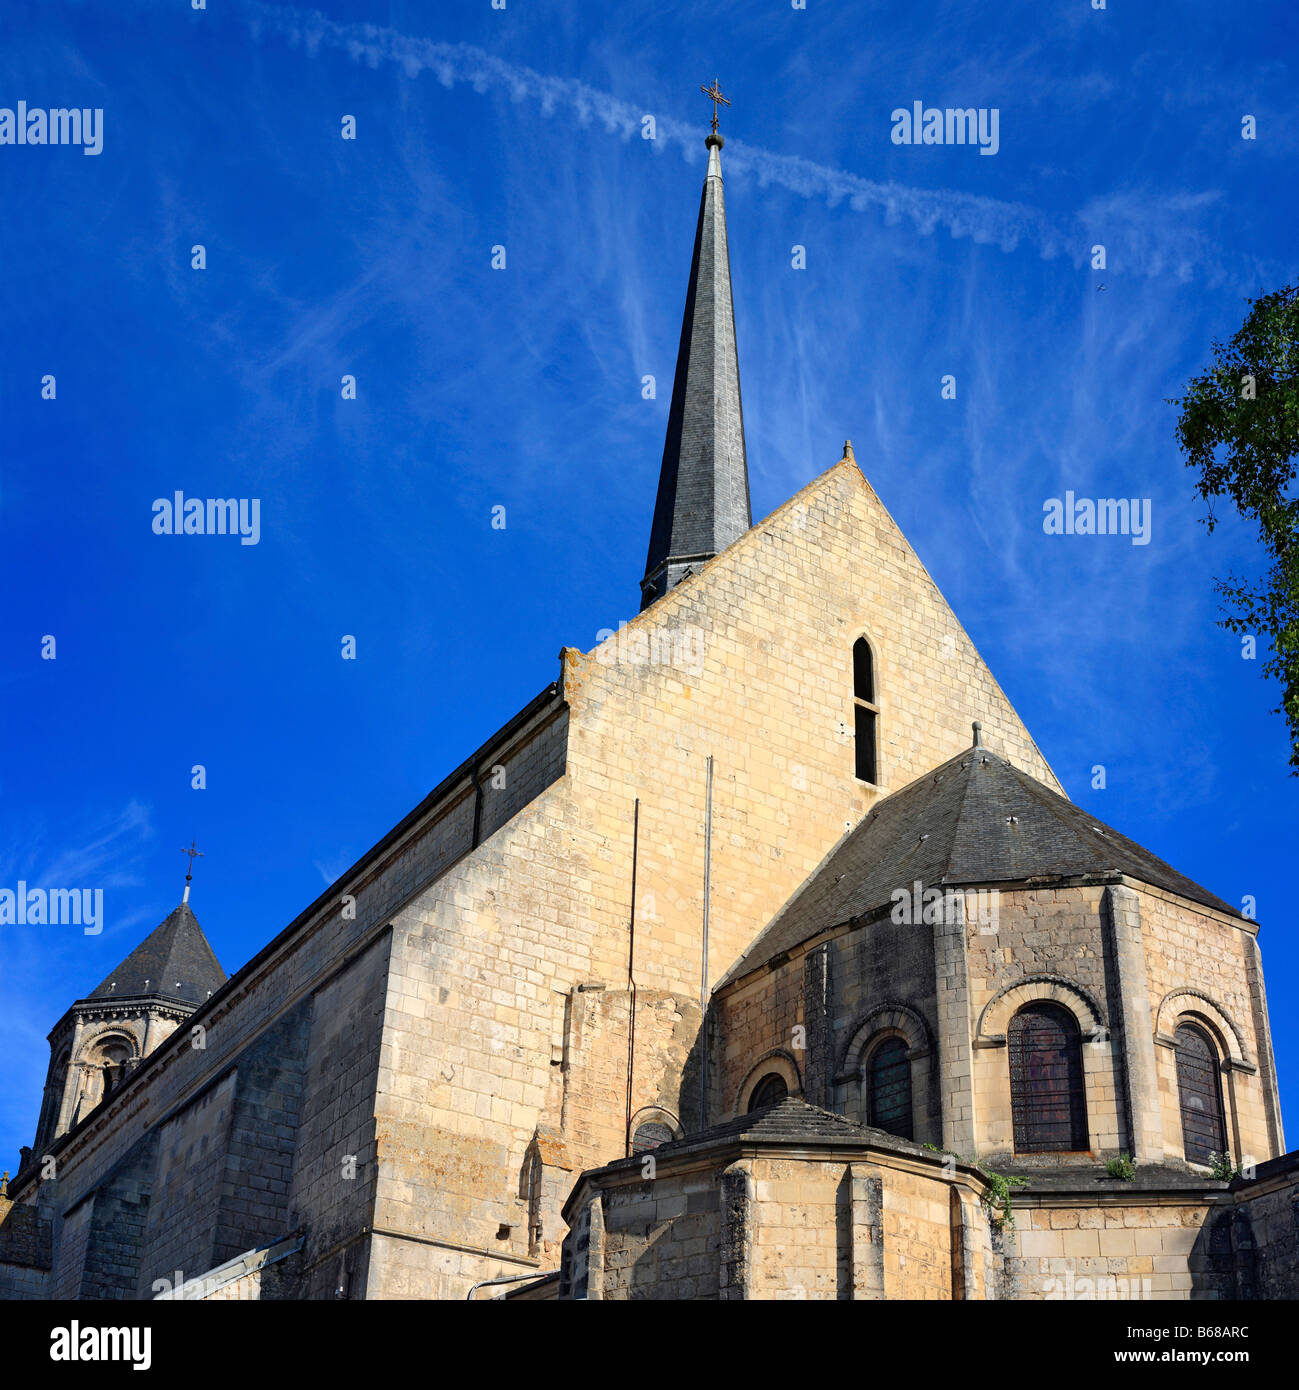 Saint Pierre cathedral, Poitiers, Poitou, France Stock Photo